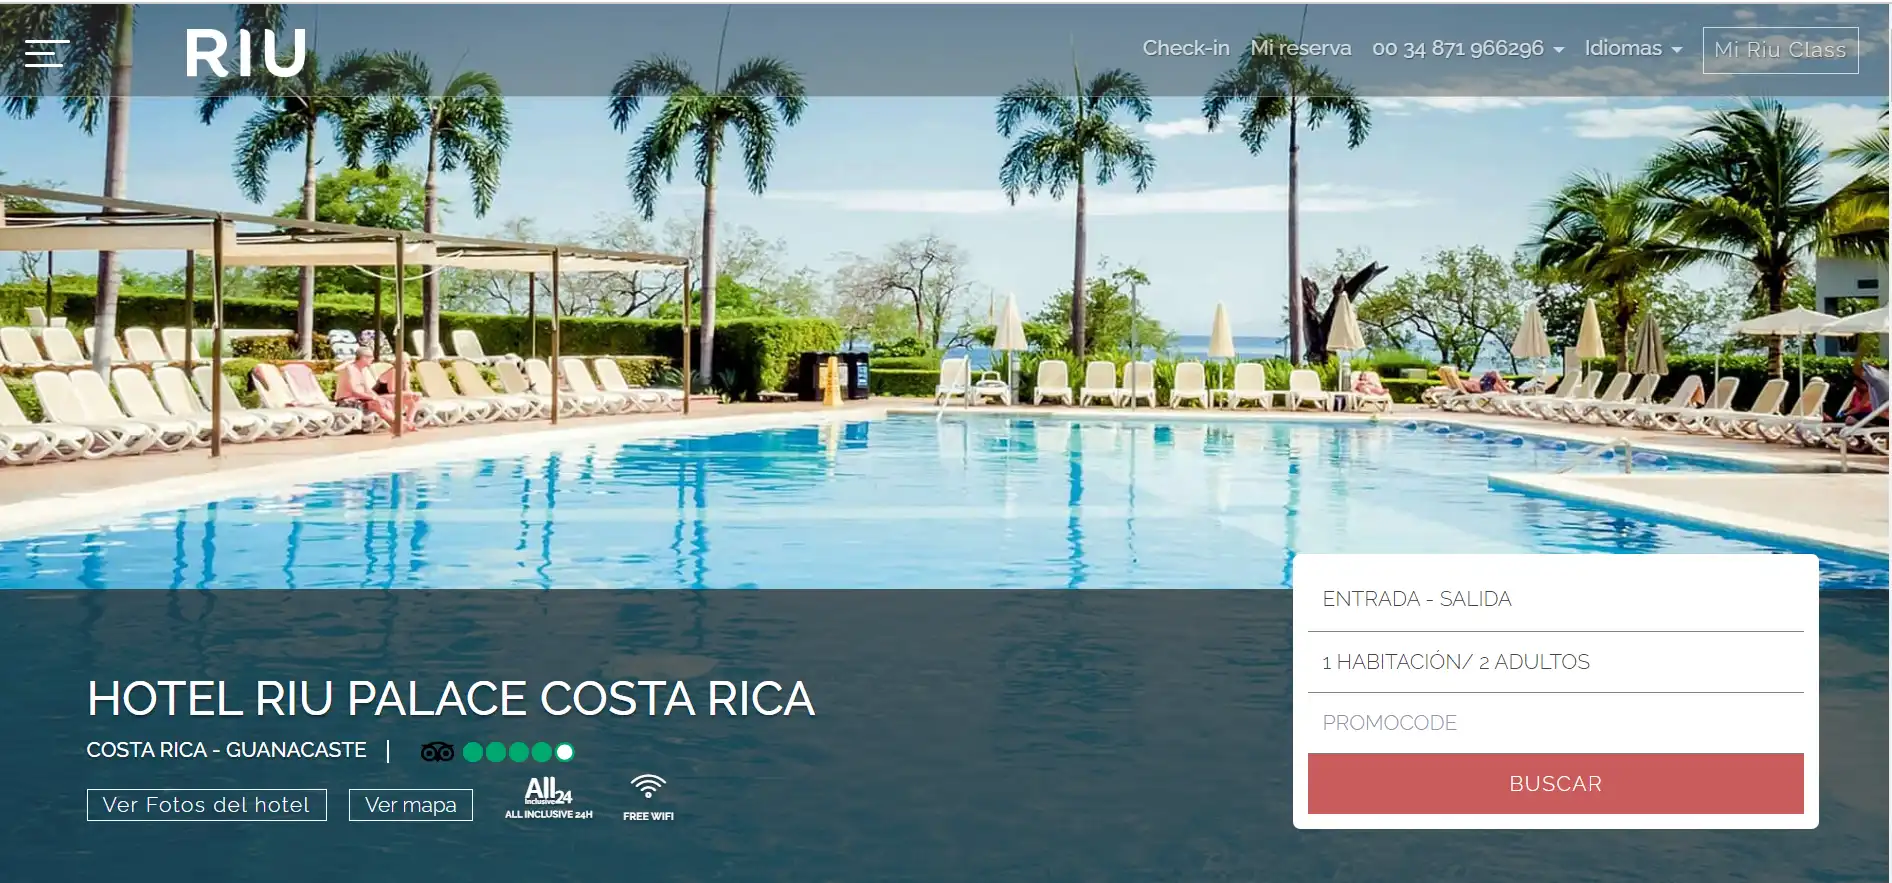 HOTEL RIU PALACE COSTA RICA